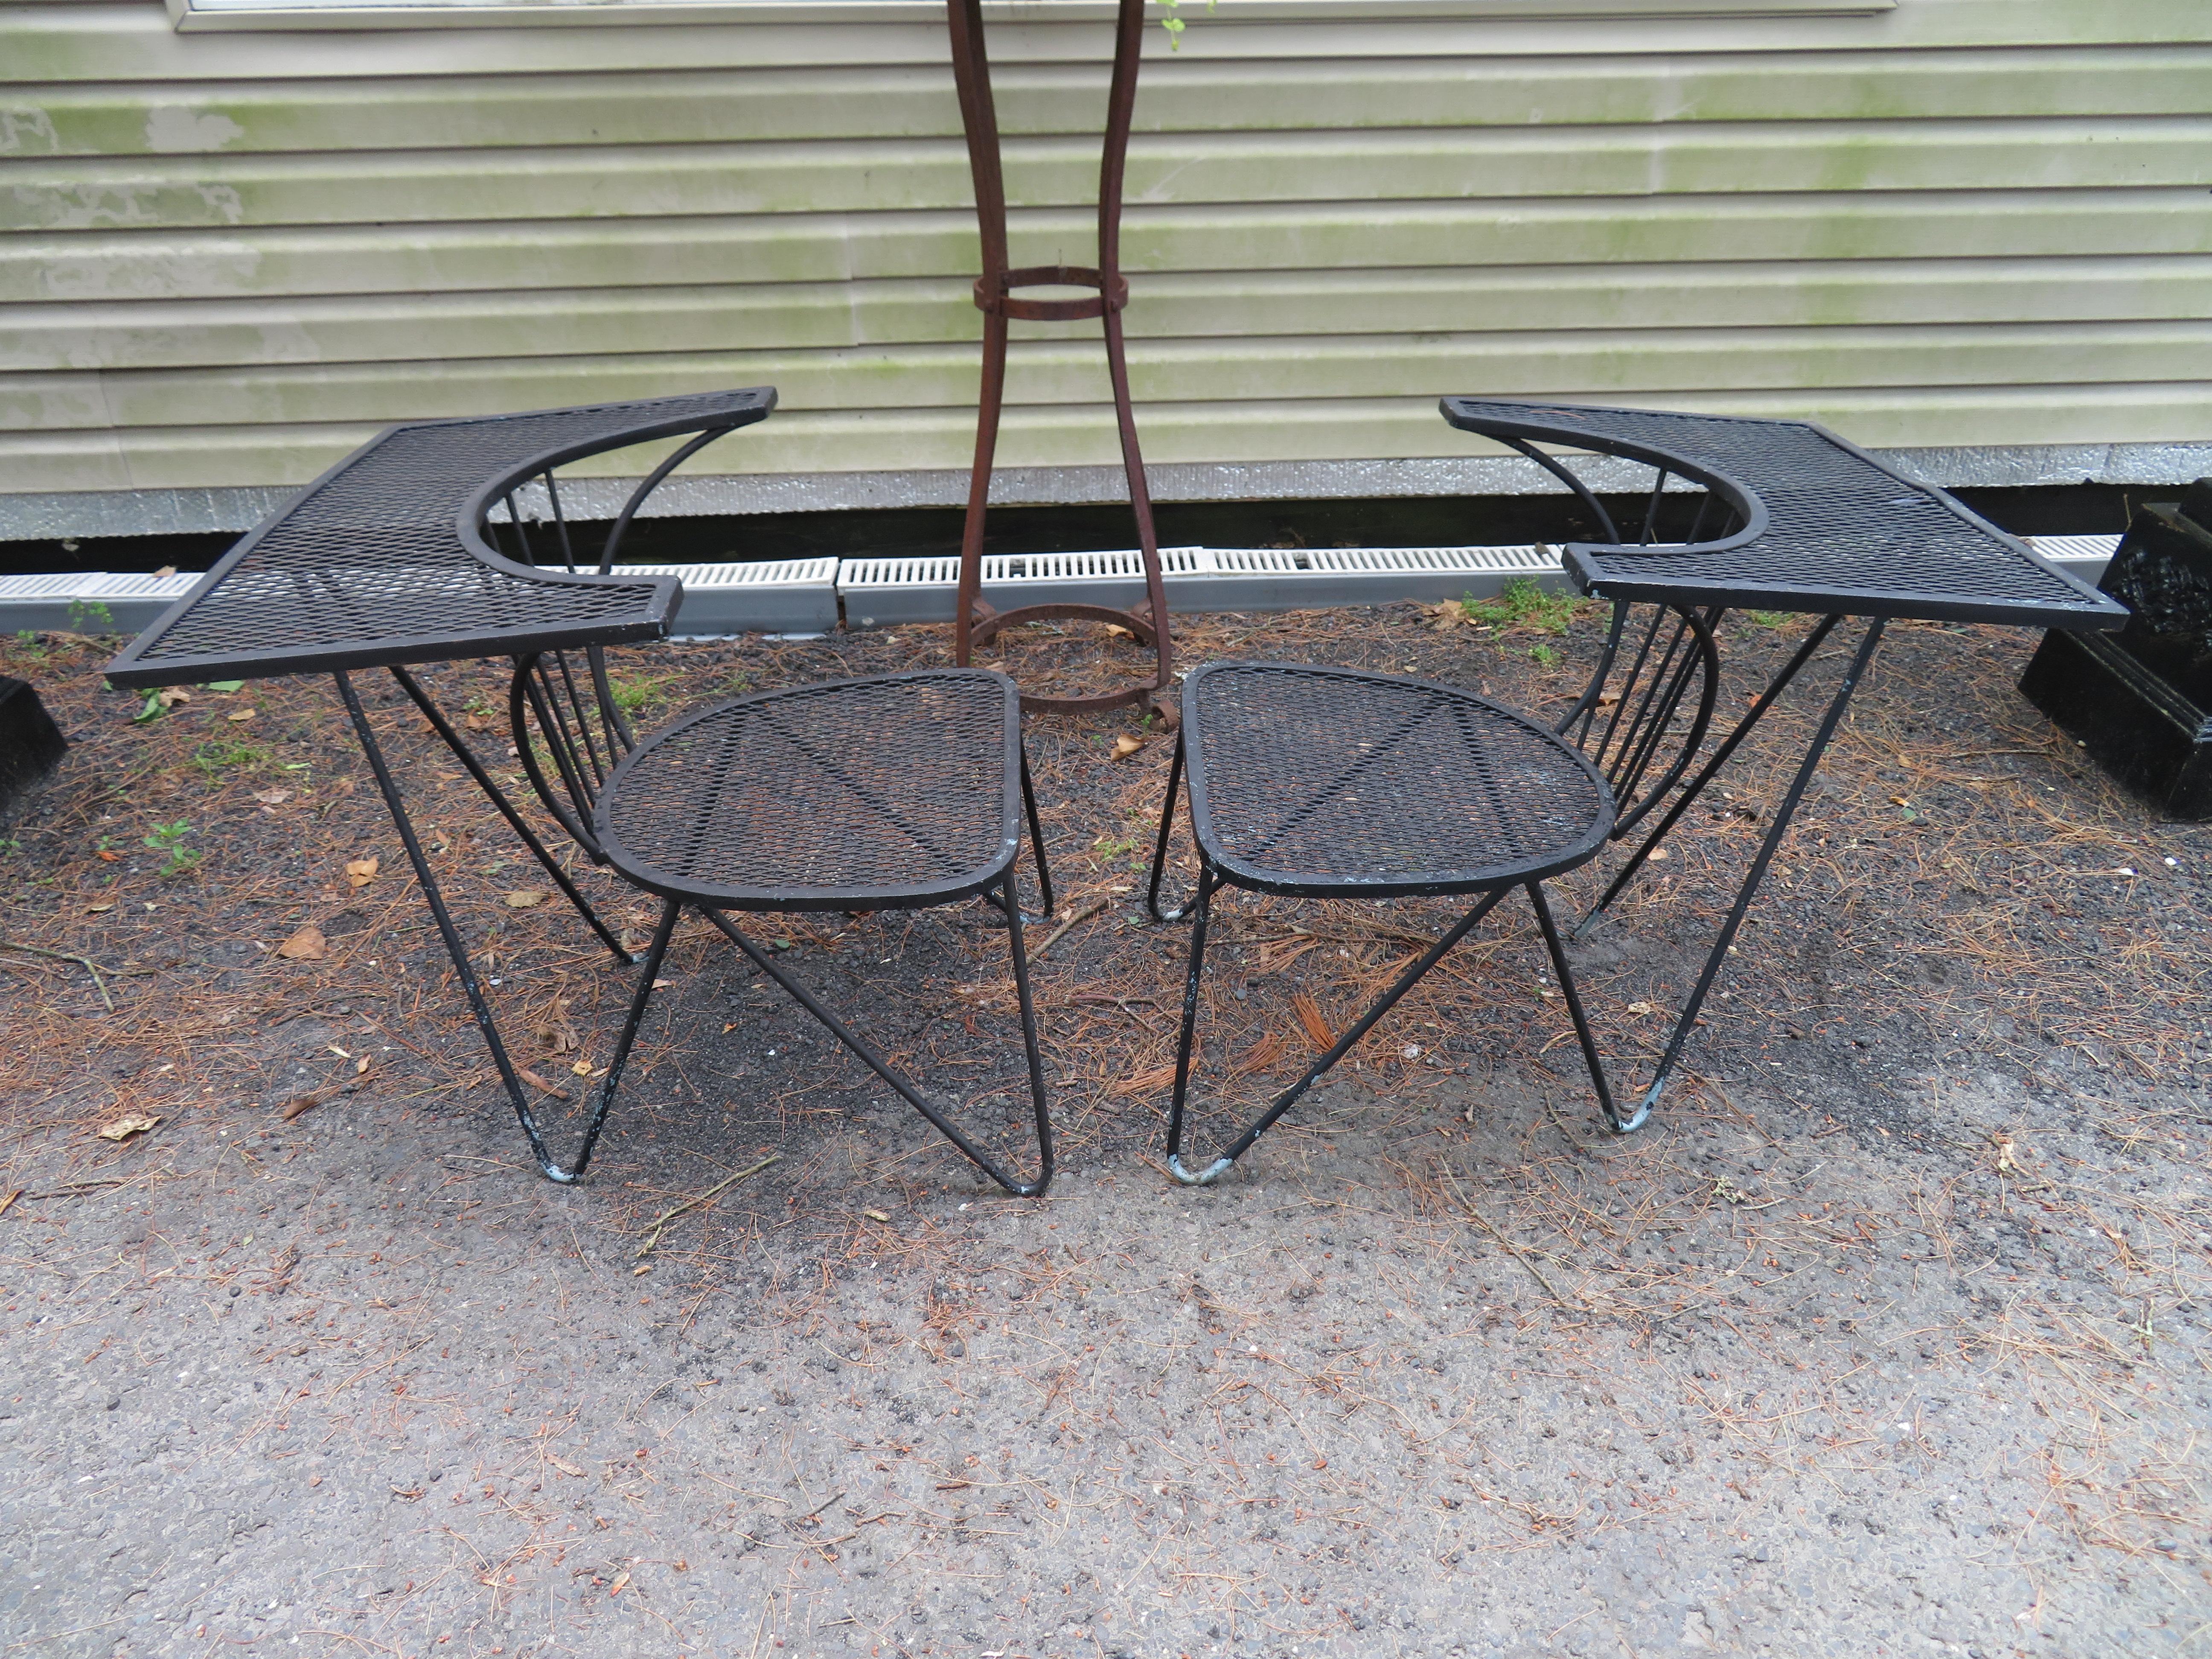 Ensemble inhabituel de 4 chaises de patio géométriques Salterini avec une fabuleuse table intégrée. Nous n'avons jamais vu d'autre jeu de ce type, ils doivent donc être assez rares. Nous adorons les pieds en épingle à cheveux très inhabituels et les